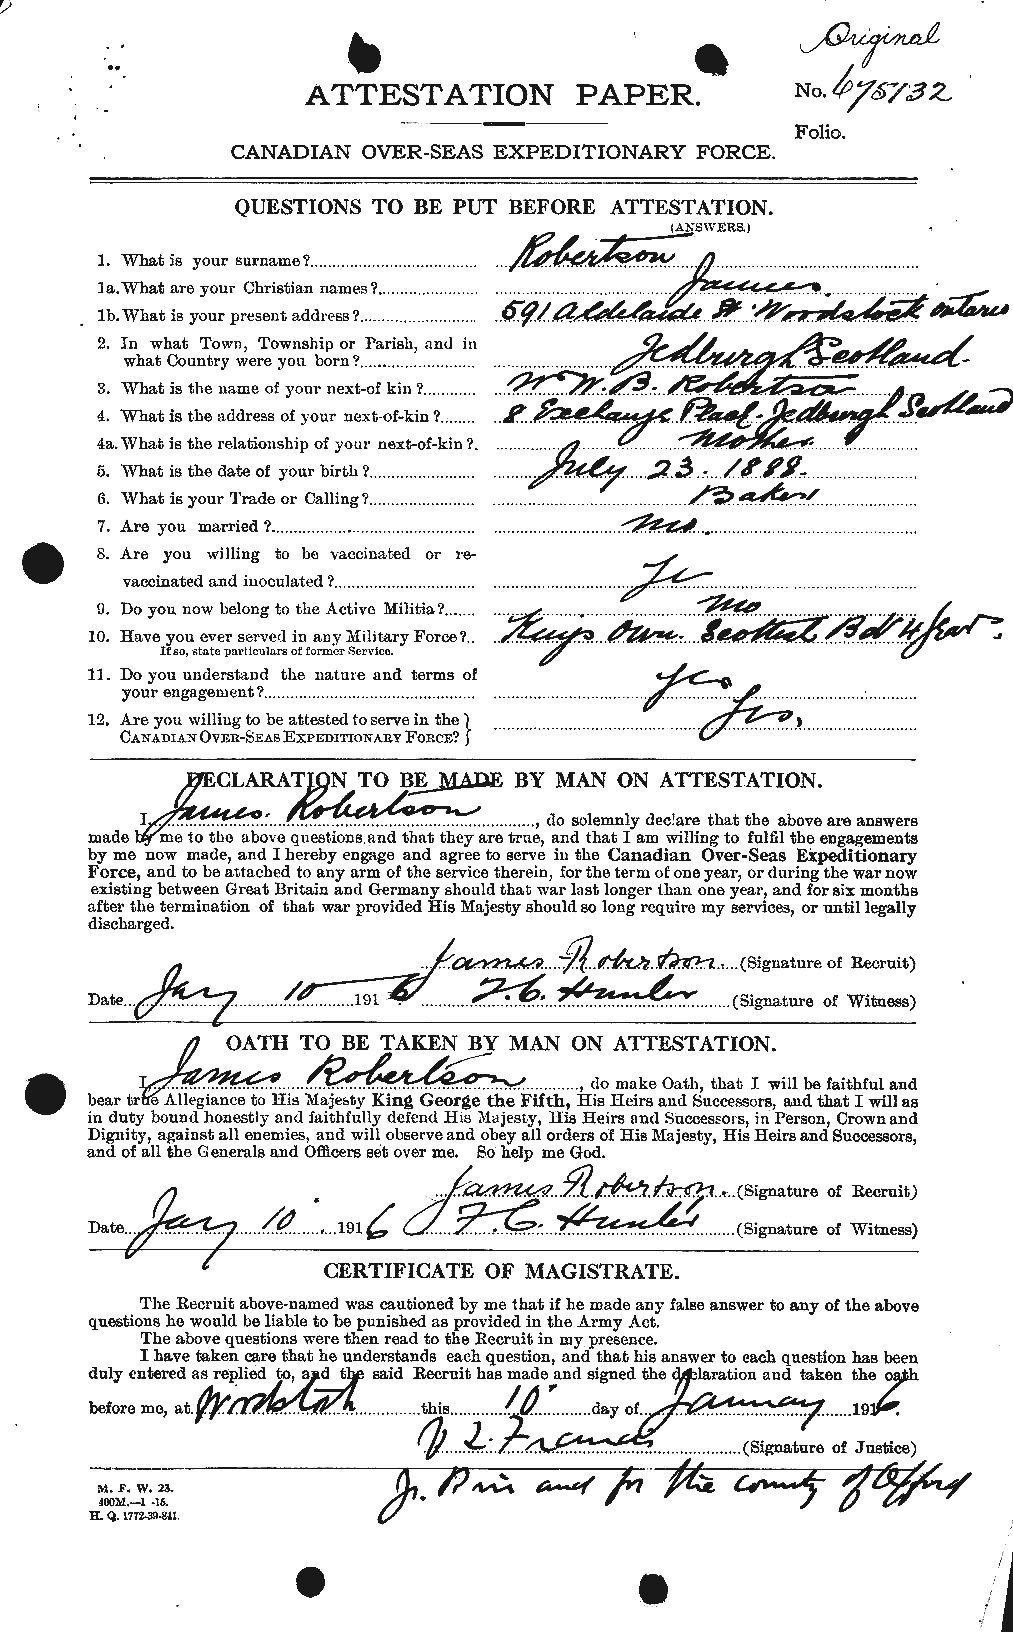 Dossiers du Personnel de la Première Guerre mondiale - CEC 608657a